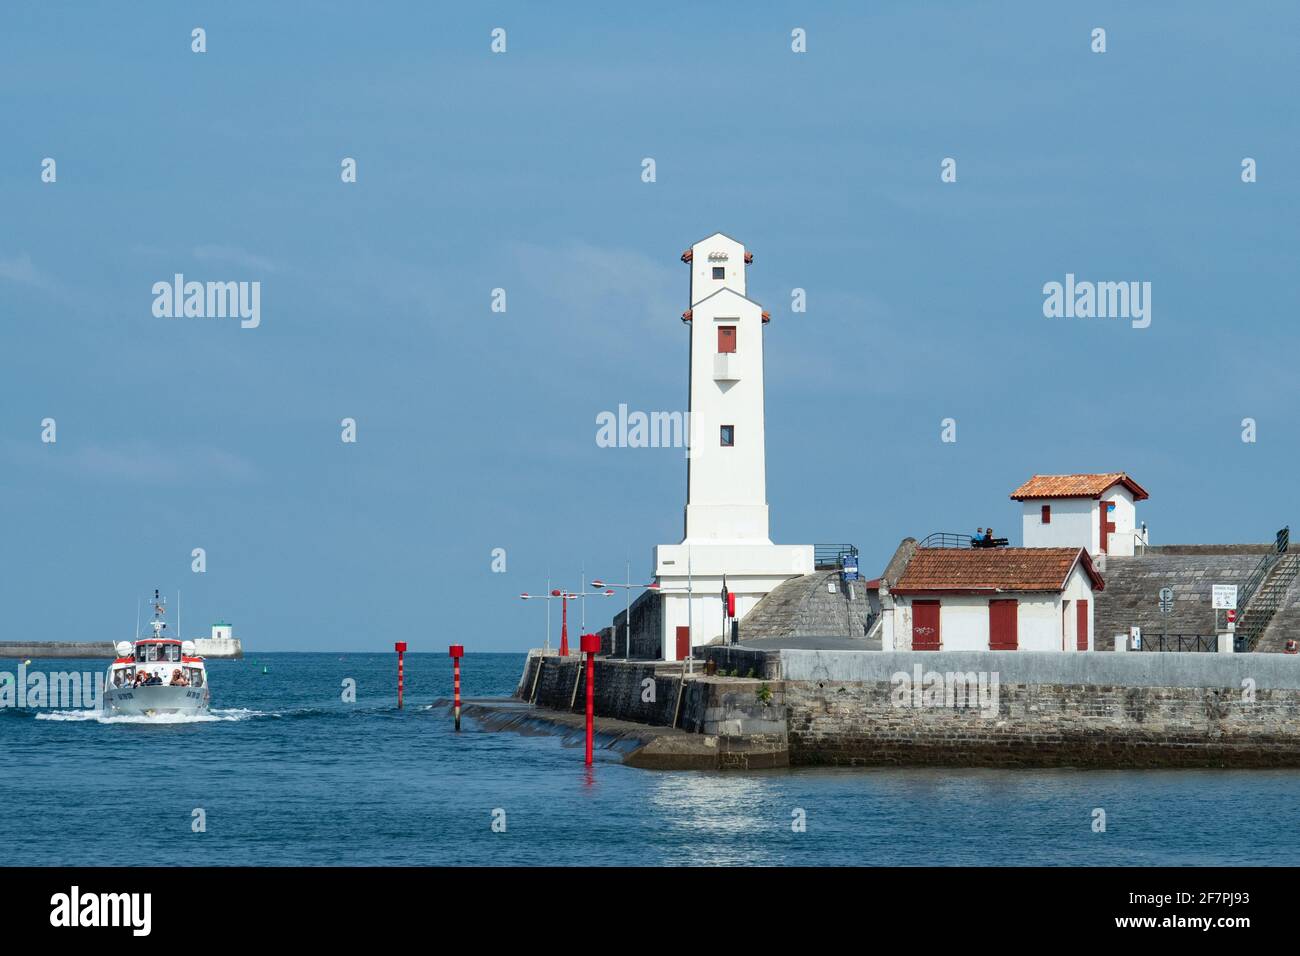 Saint-Jean-de-Luz, Francia - 4 settembre 2018: Una barca sta entrando nel porto Foto Stock